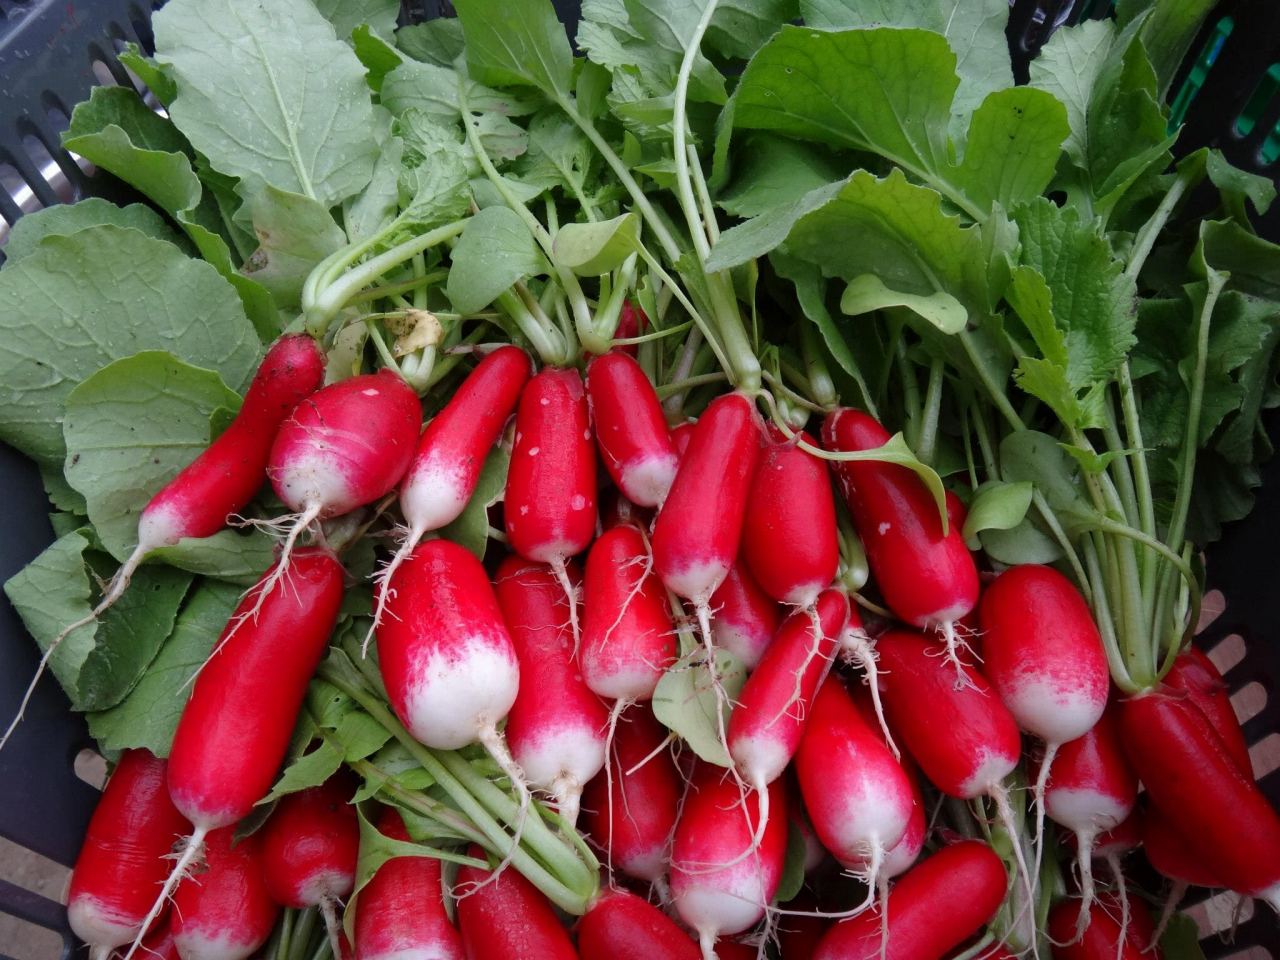 Harvest of radish